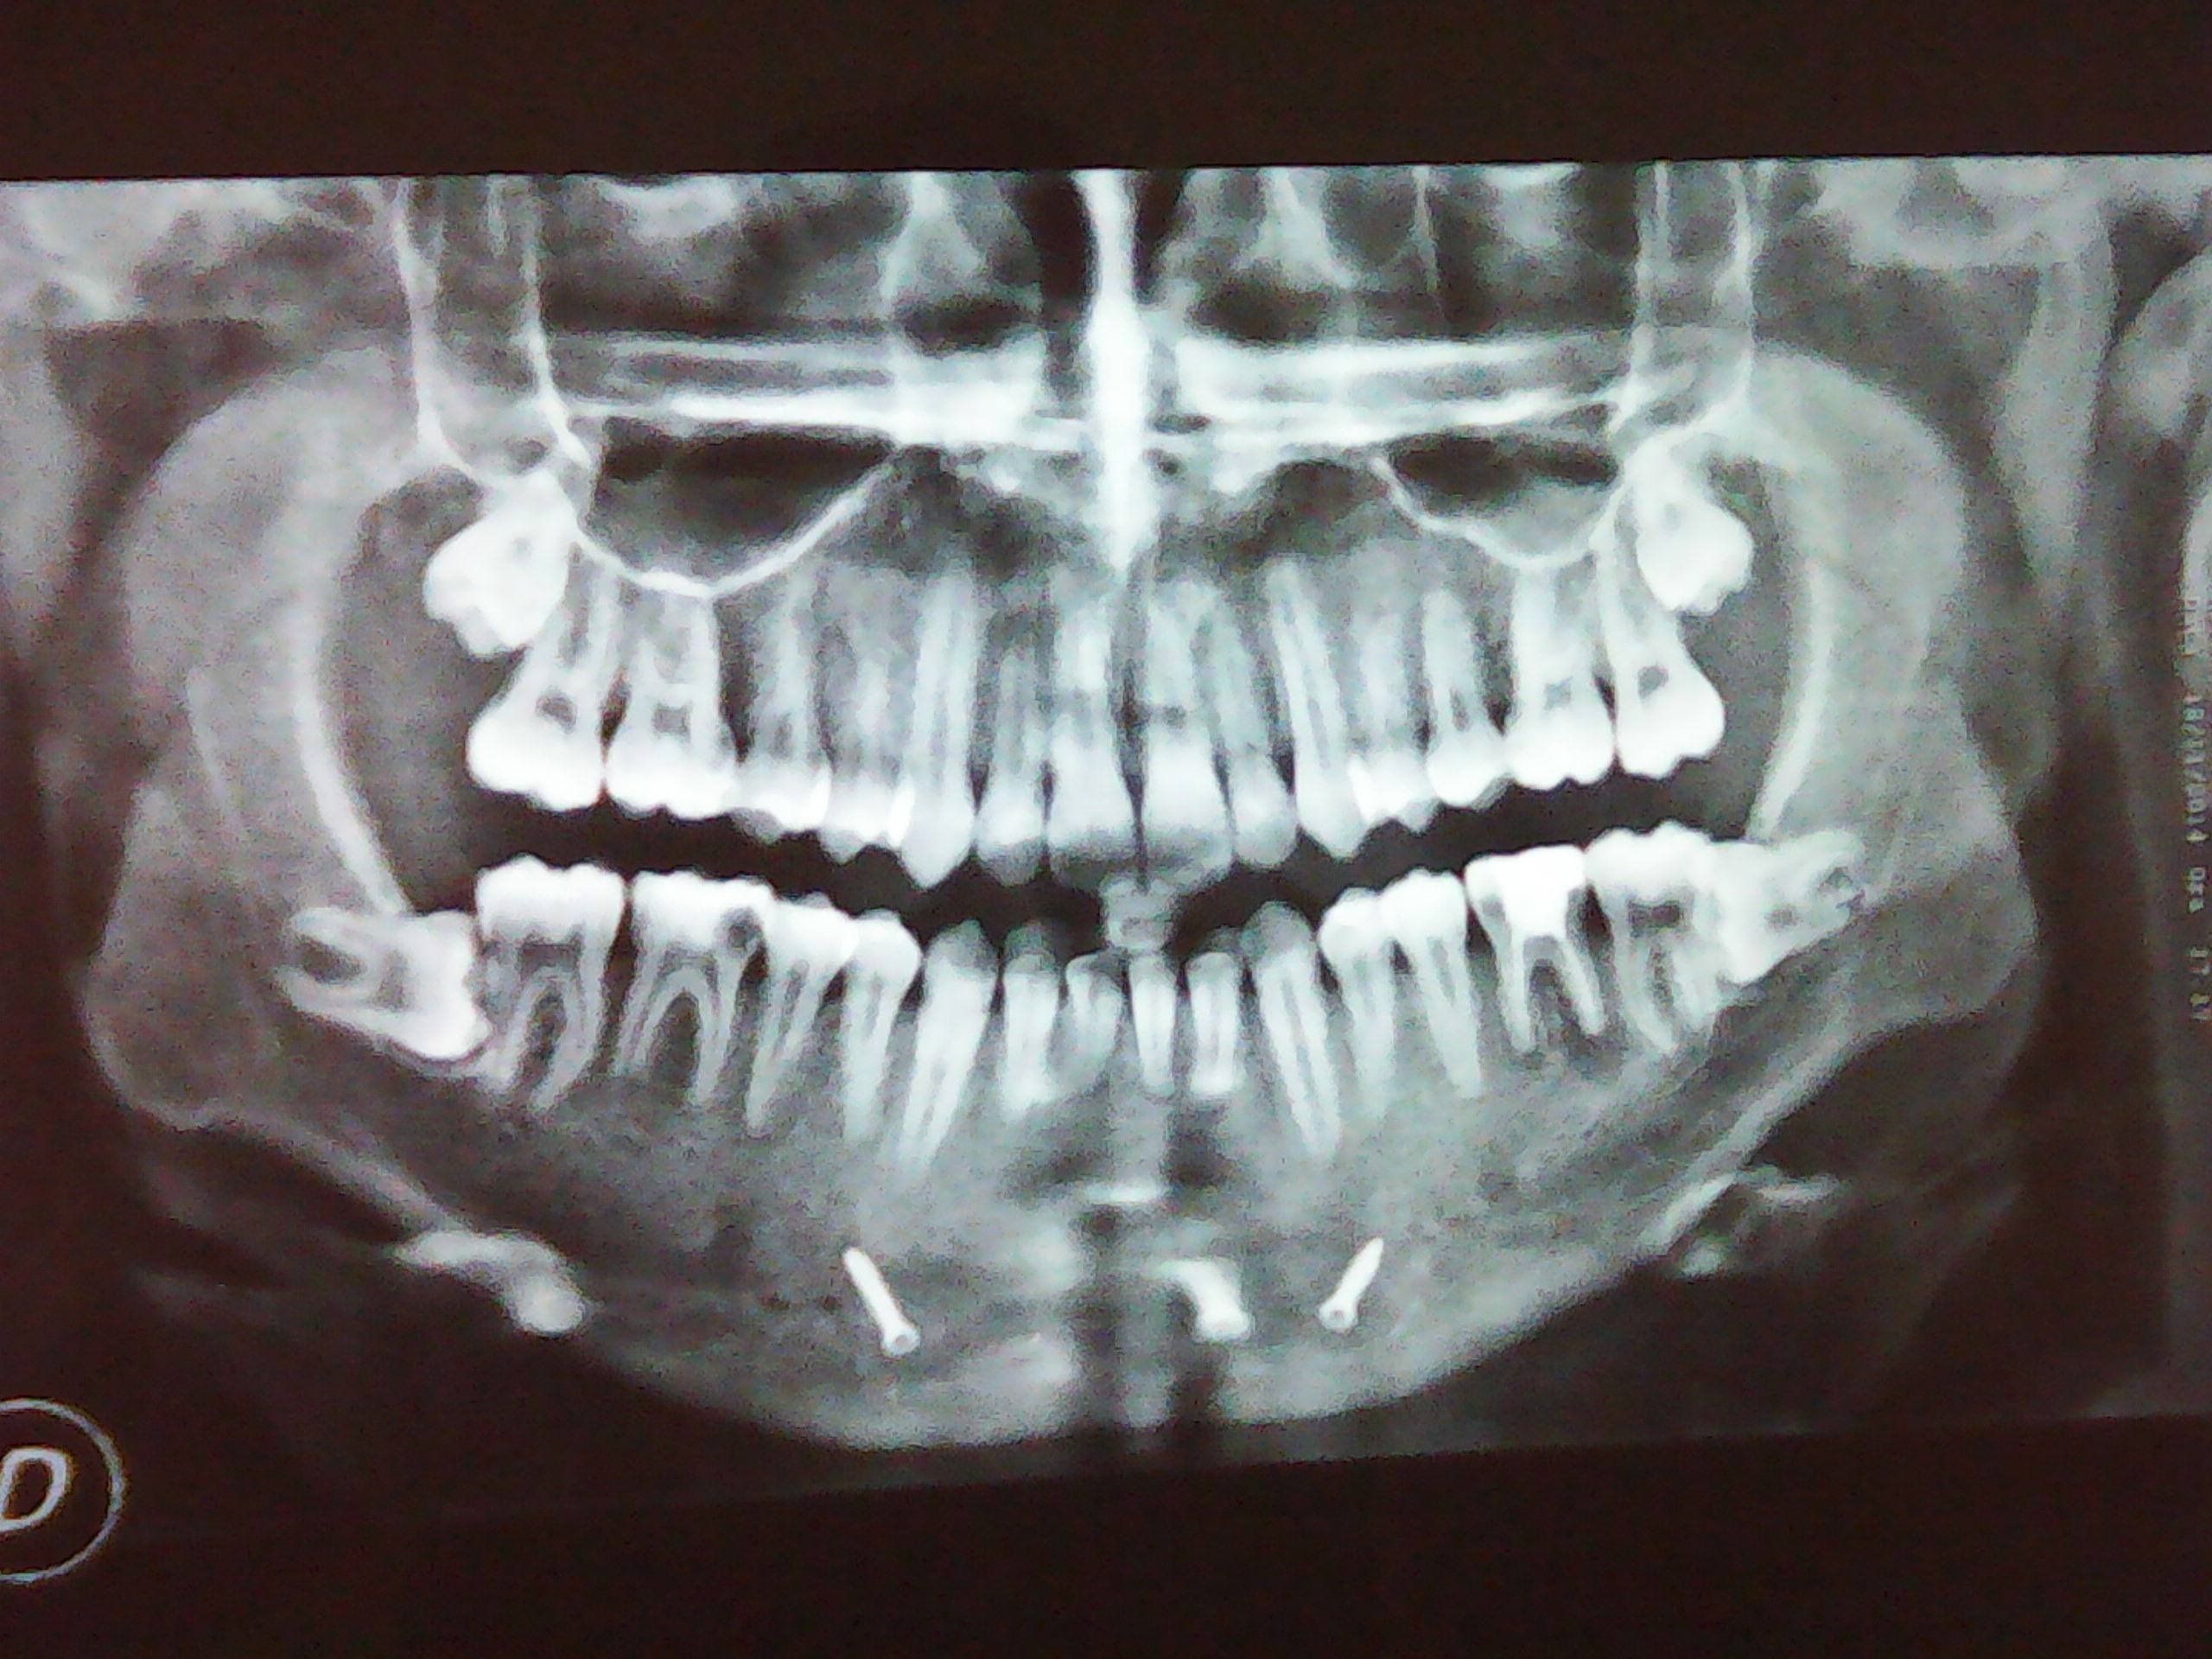 E' necessario un trattamento ortodontico?